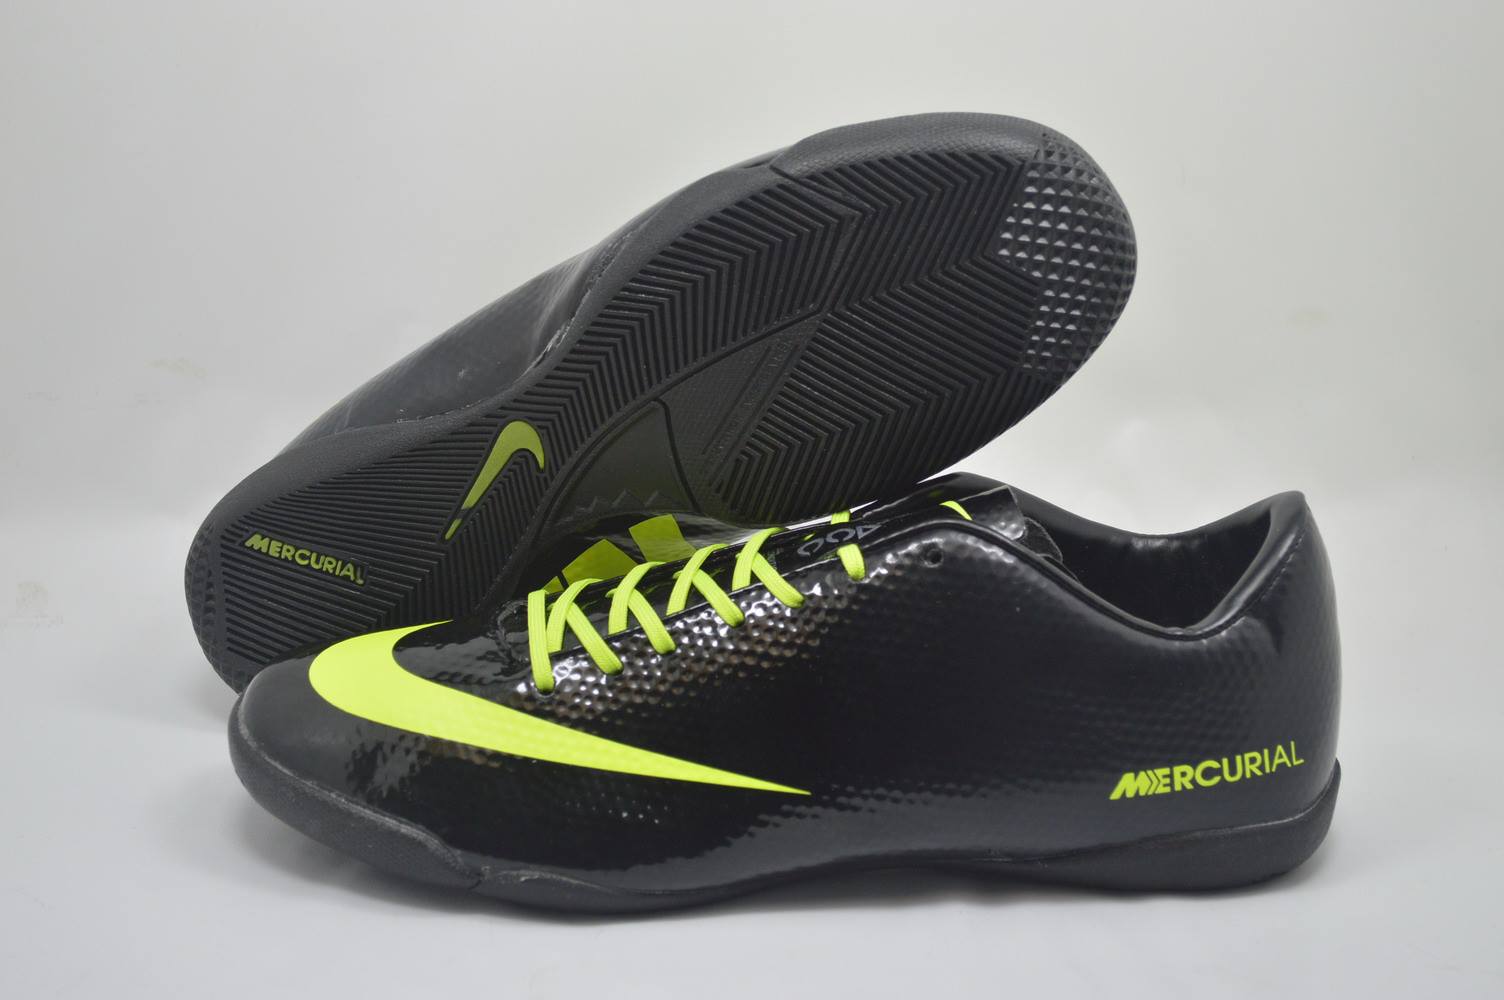  Sepatu  Futsal Nike  dan  Adidas  Terbaru Sepatu  Futsal Nike  